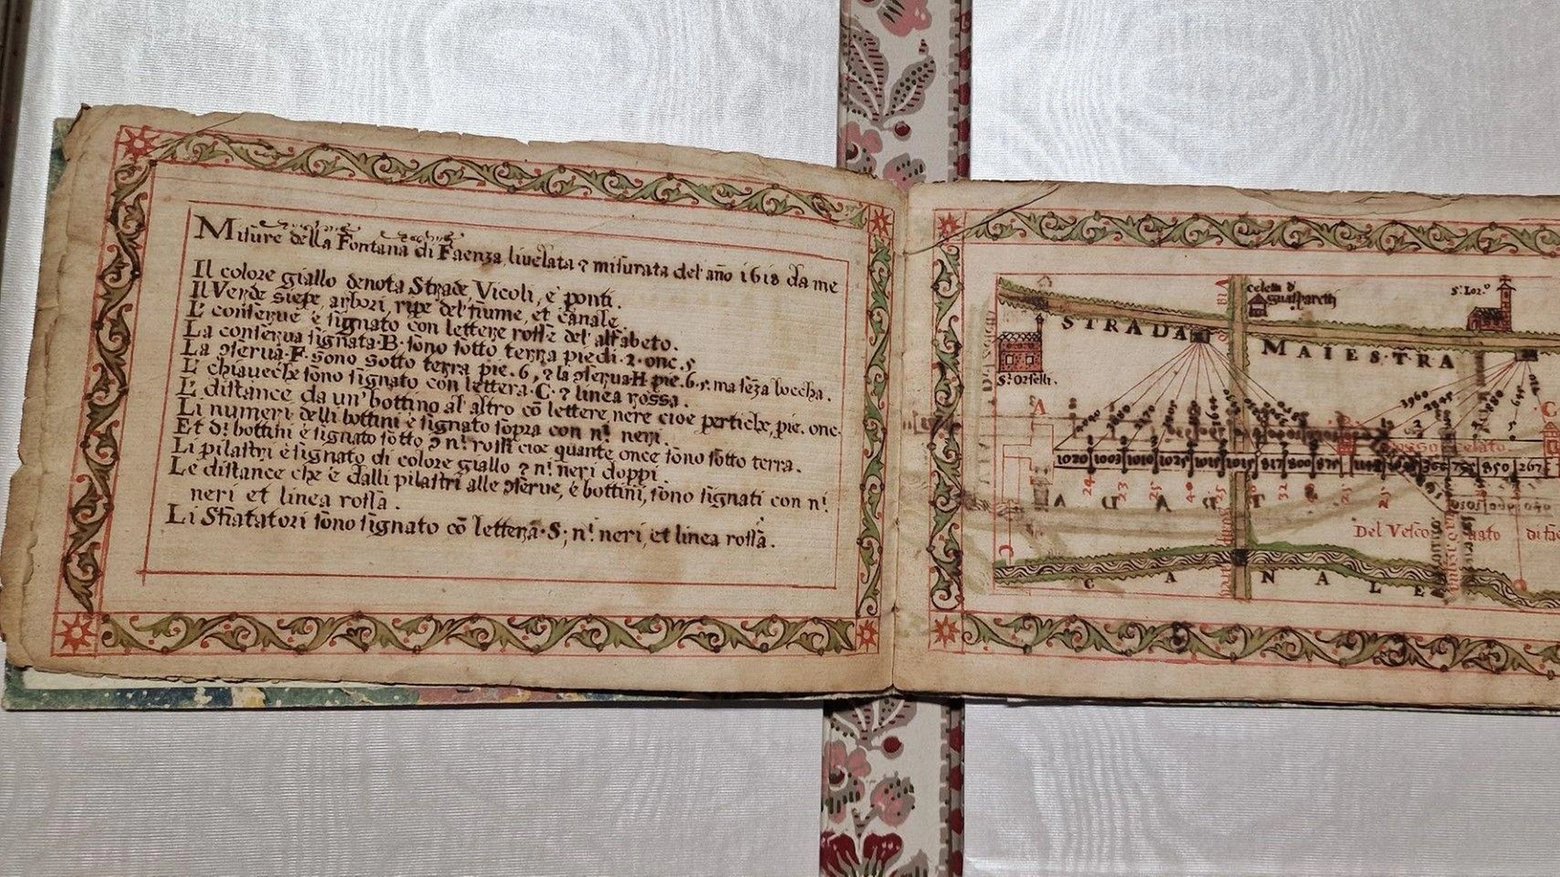 Un prezioso manoscritto del XVII secolo donato alla biblioteca Manfrediana